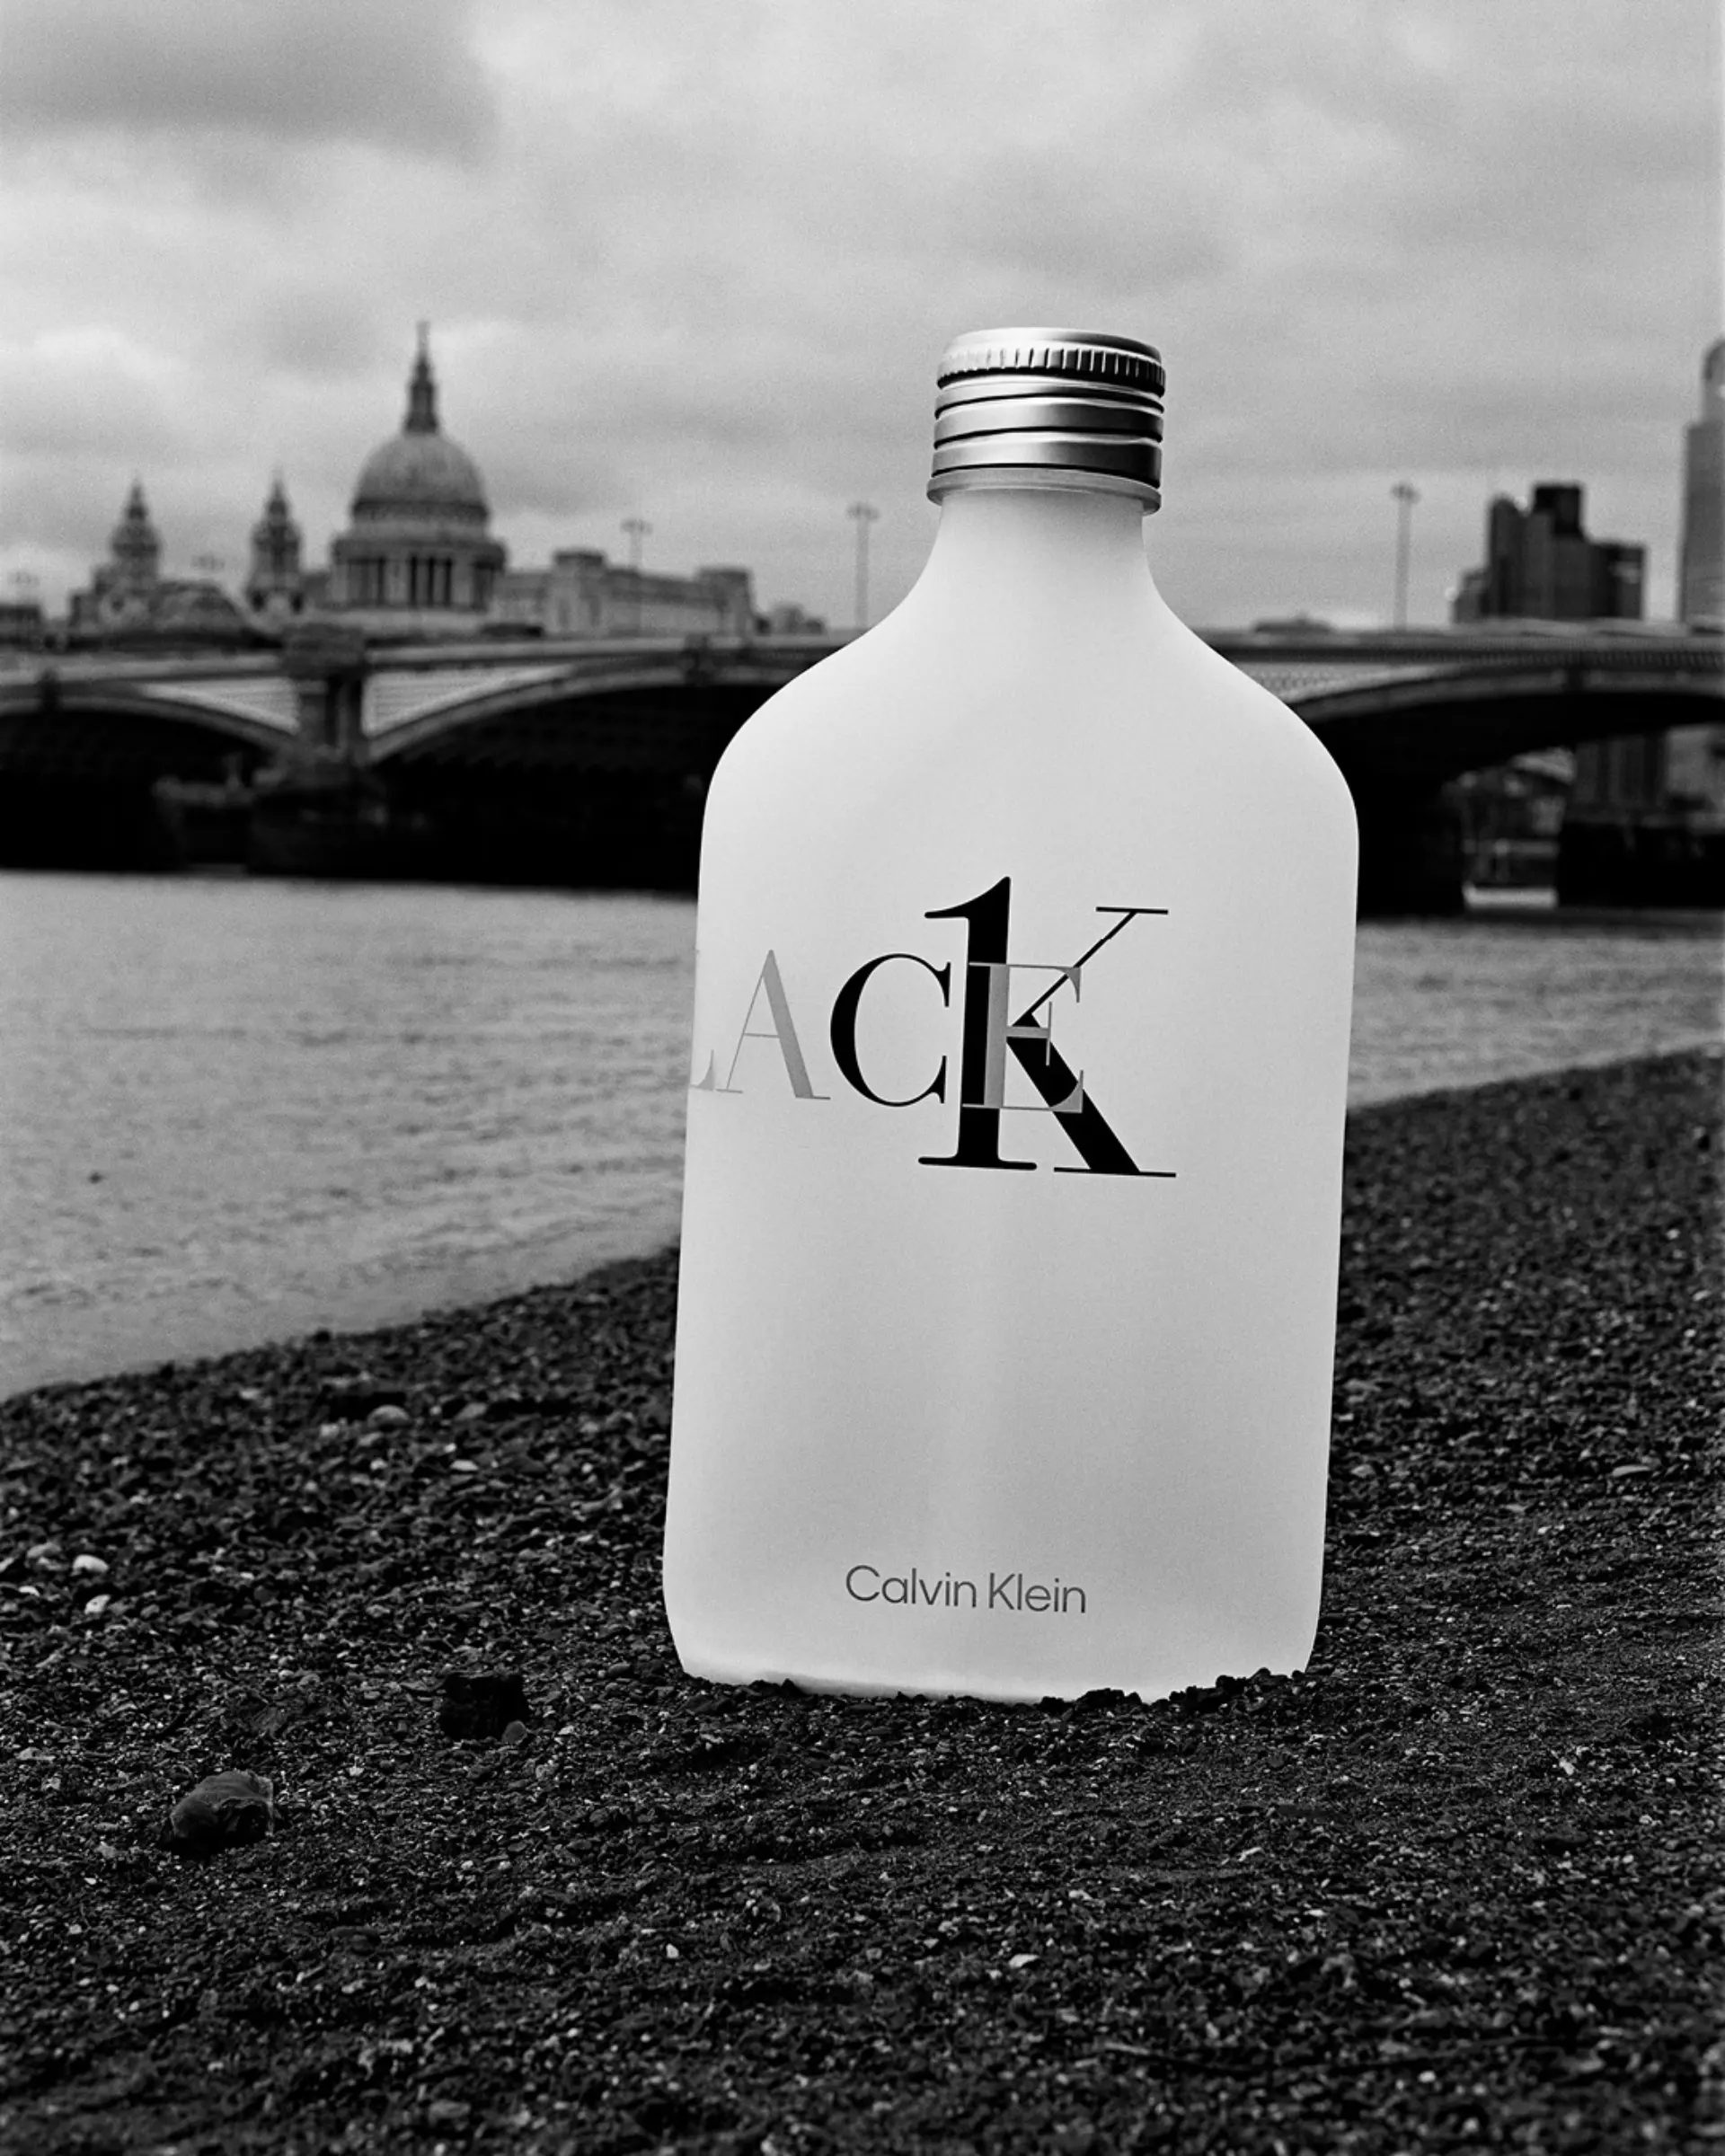 Calvin Klein lanzó una nueva versión del perfume CK One